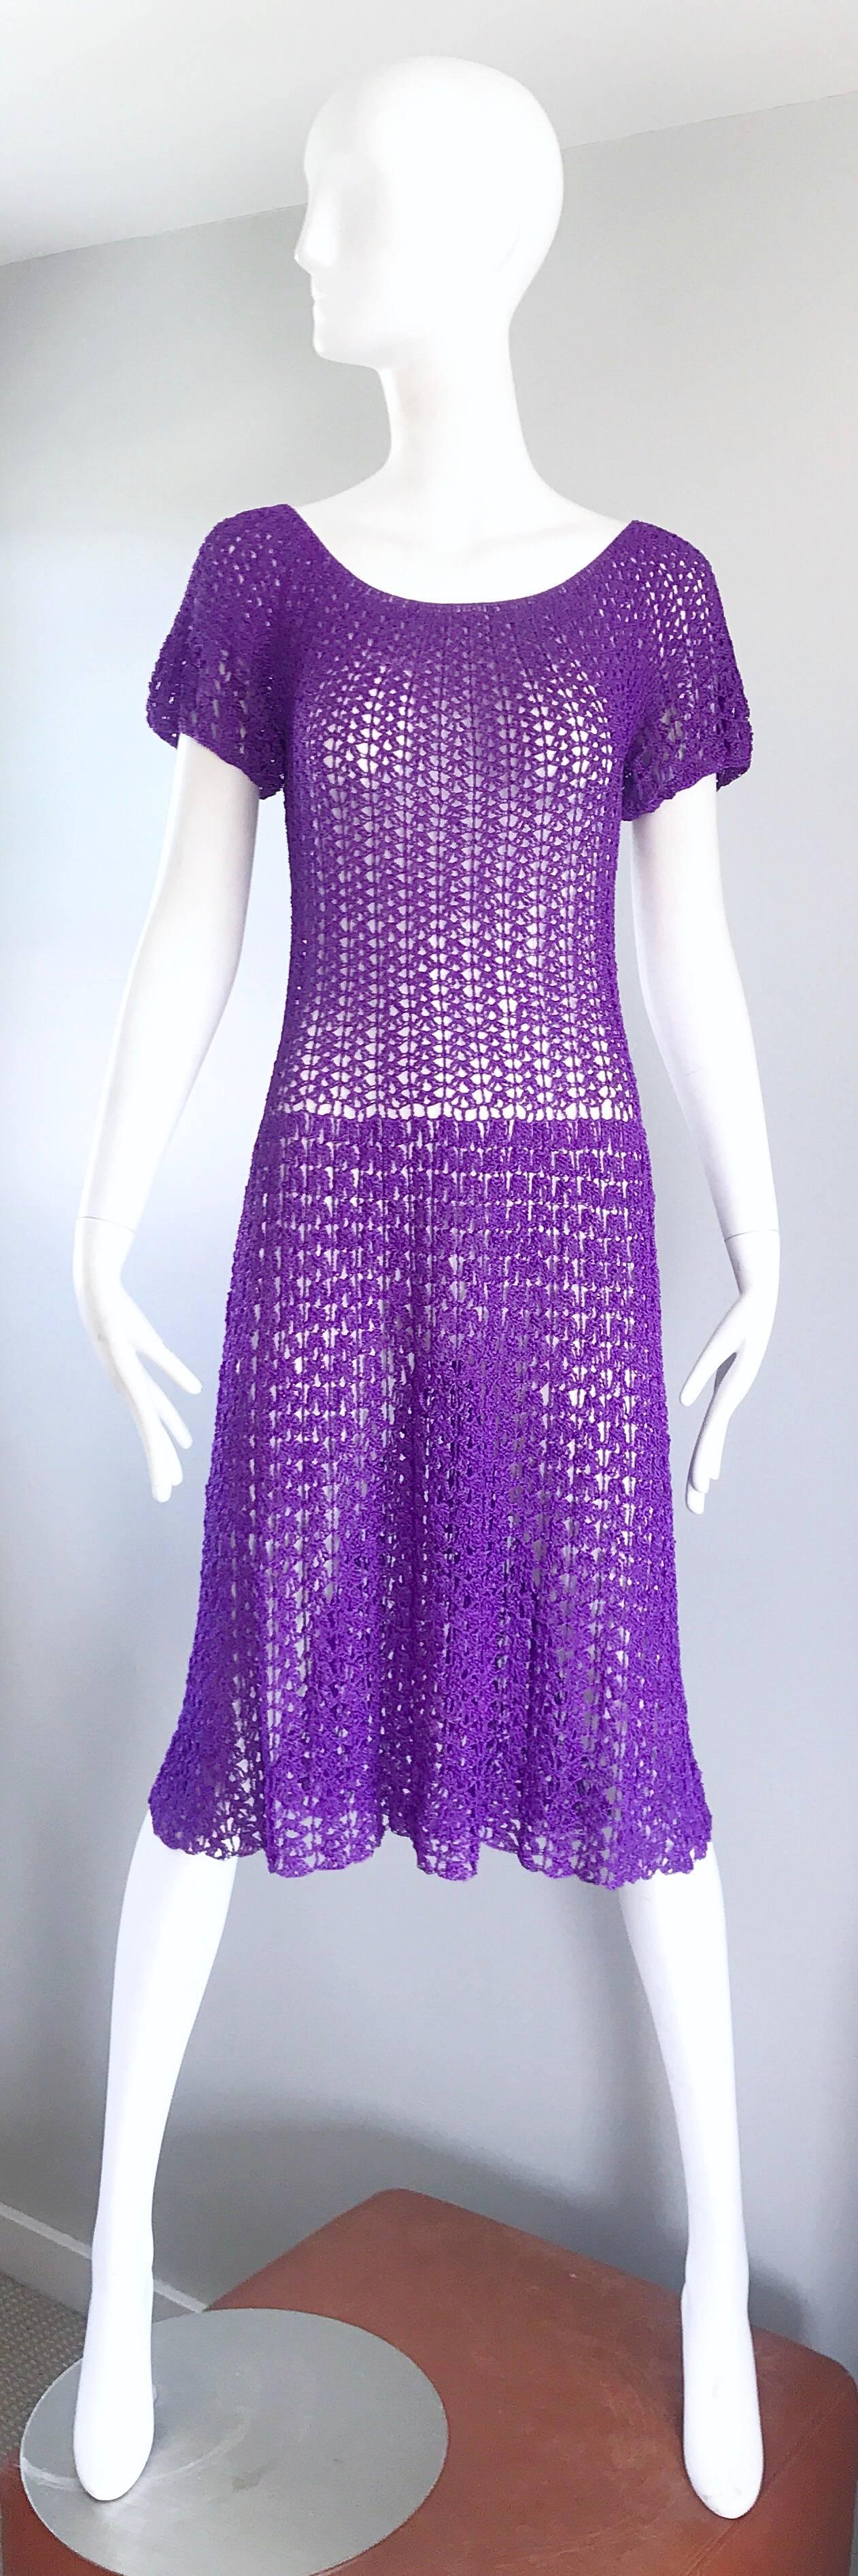 Absolut wunderbare 1960er Jahre lila italienischen Rayon Hand häkeln knielangen Kleid! Die Konstruktion dieser schwer zu findenden Schönheit ist tadellos! Vollständig von Hand genäht, mit viel Liebe zum Detail. Es ist eindeutig eine Ode an die